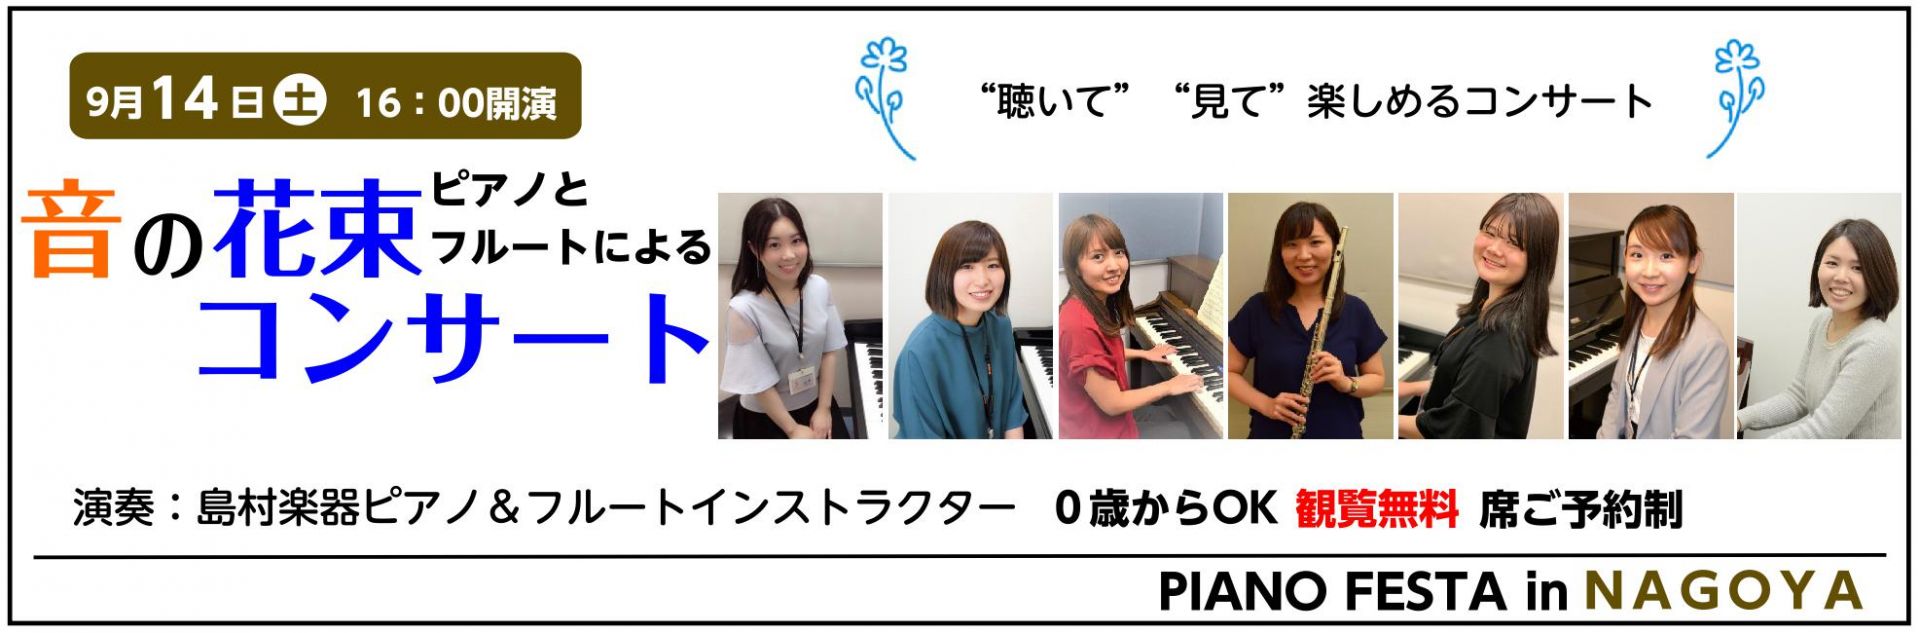 *「ピアノとフルートによる　音の花束コンサート」 愛知県内の各店舗で日ごろレッスンを担当している、ピアノ＆フルートインストラクターによるコンサートを開催することになりました！]]1日限りのスペシャルコンサートです！インストラクターが日頃の感謝の気持ちを込めて演奏いたします。ぜひお越しください！！ * […]